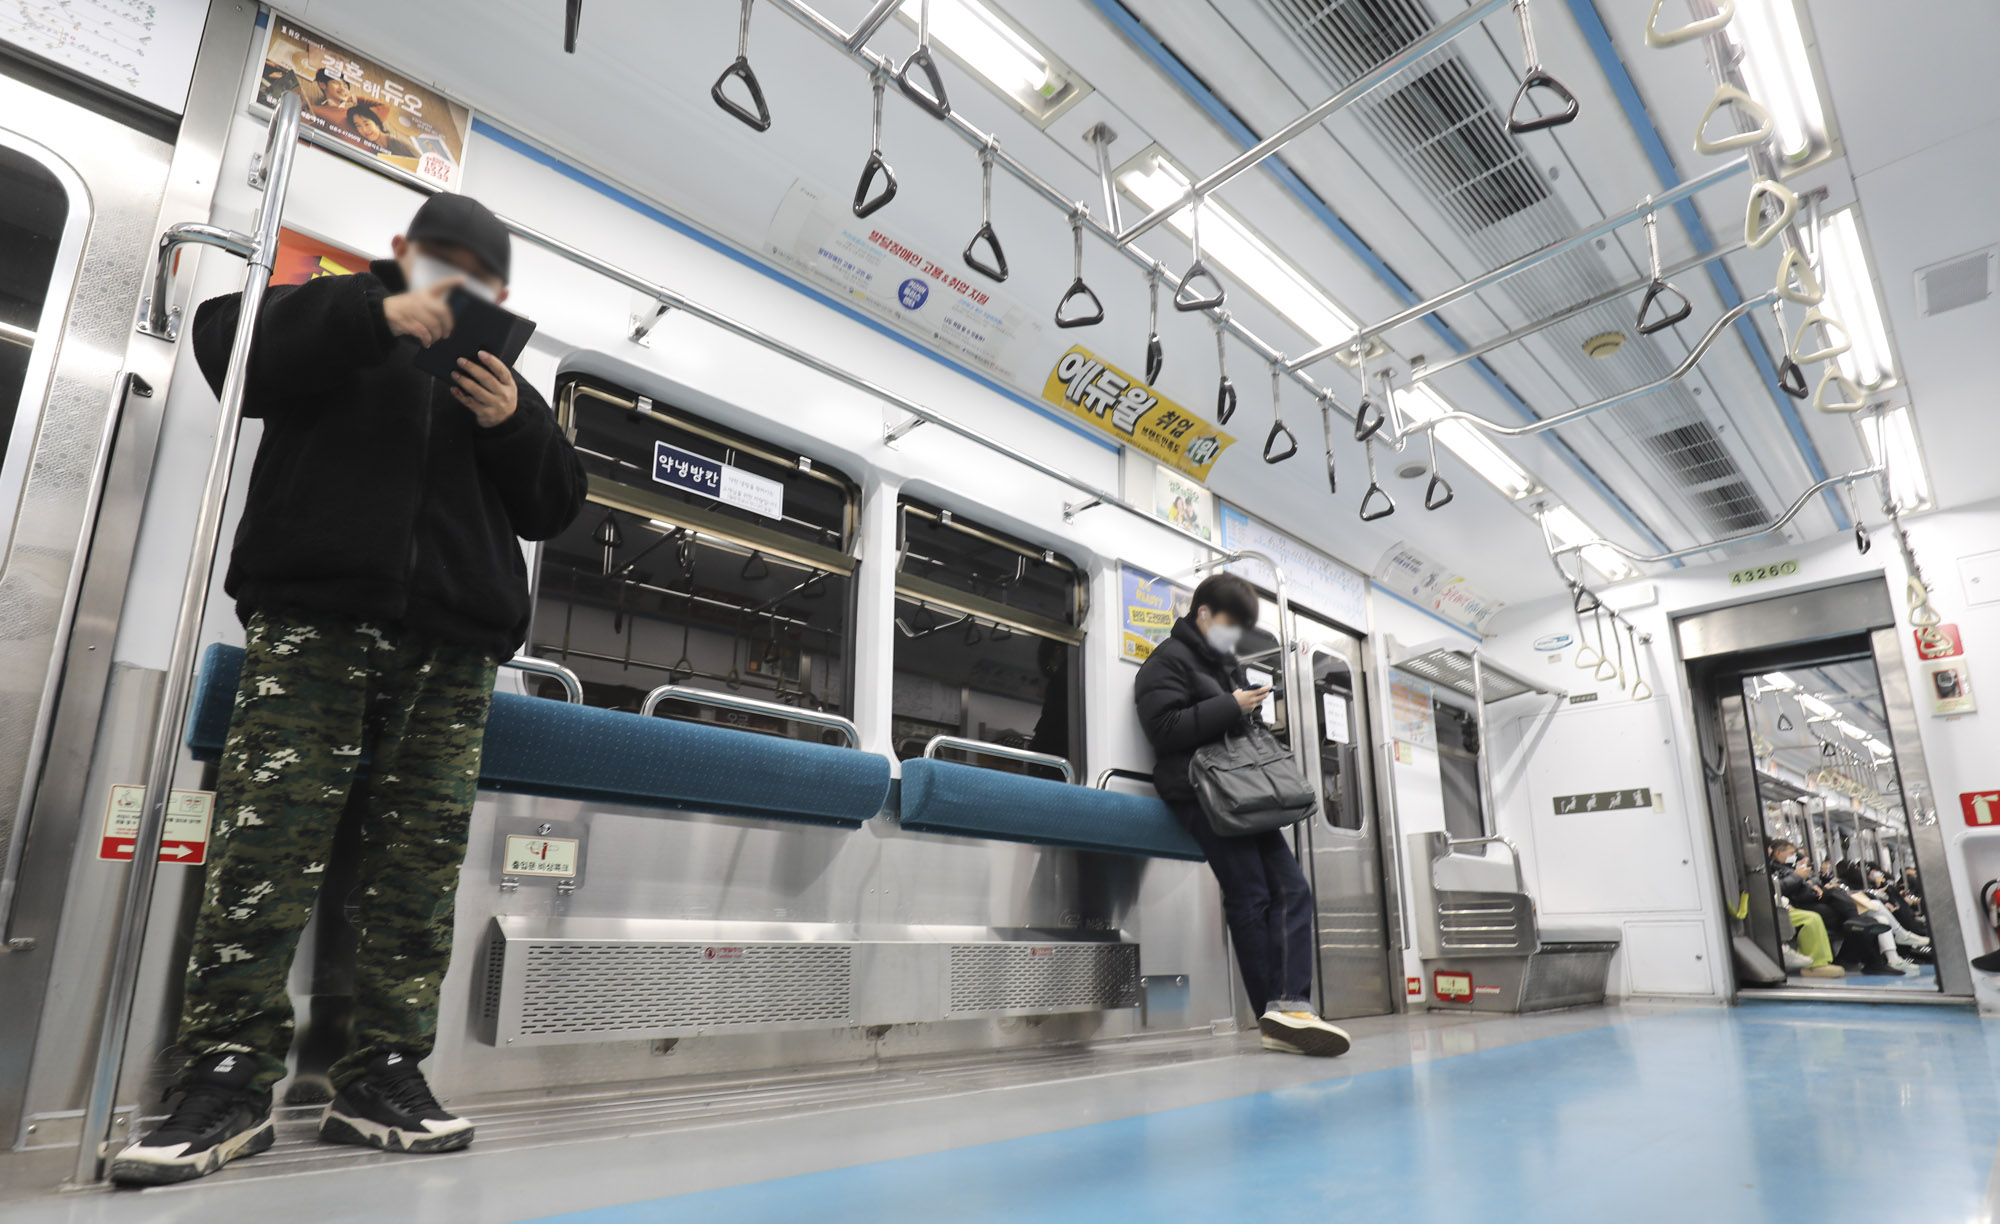 의자없는칸;지하철;지하철4호선;출근길;대중교통;혼잡도완화;서울지하철공사